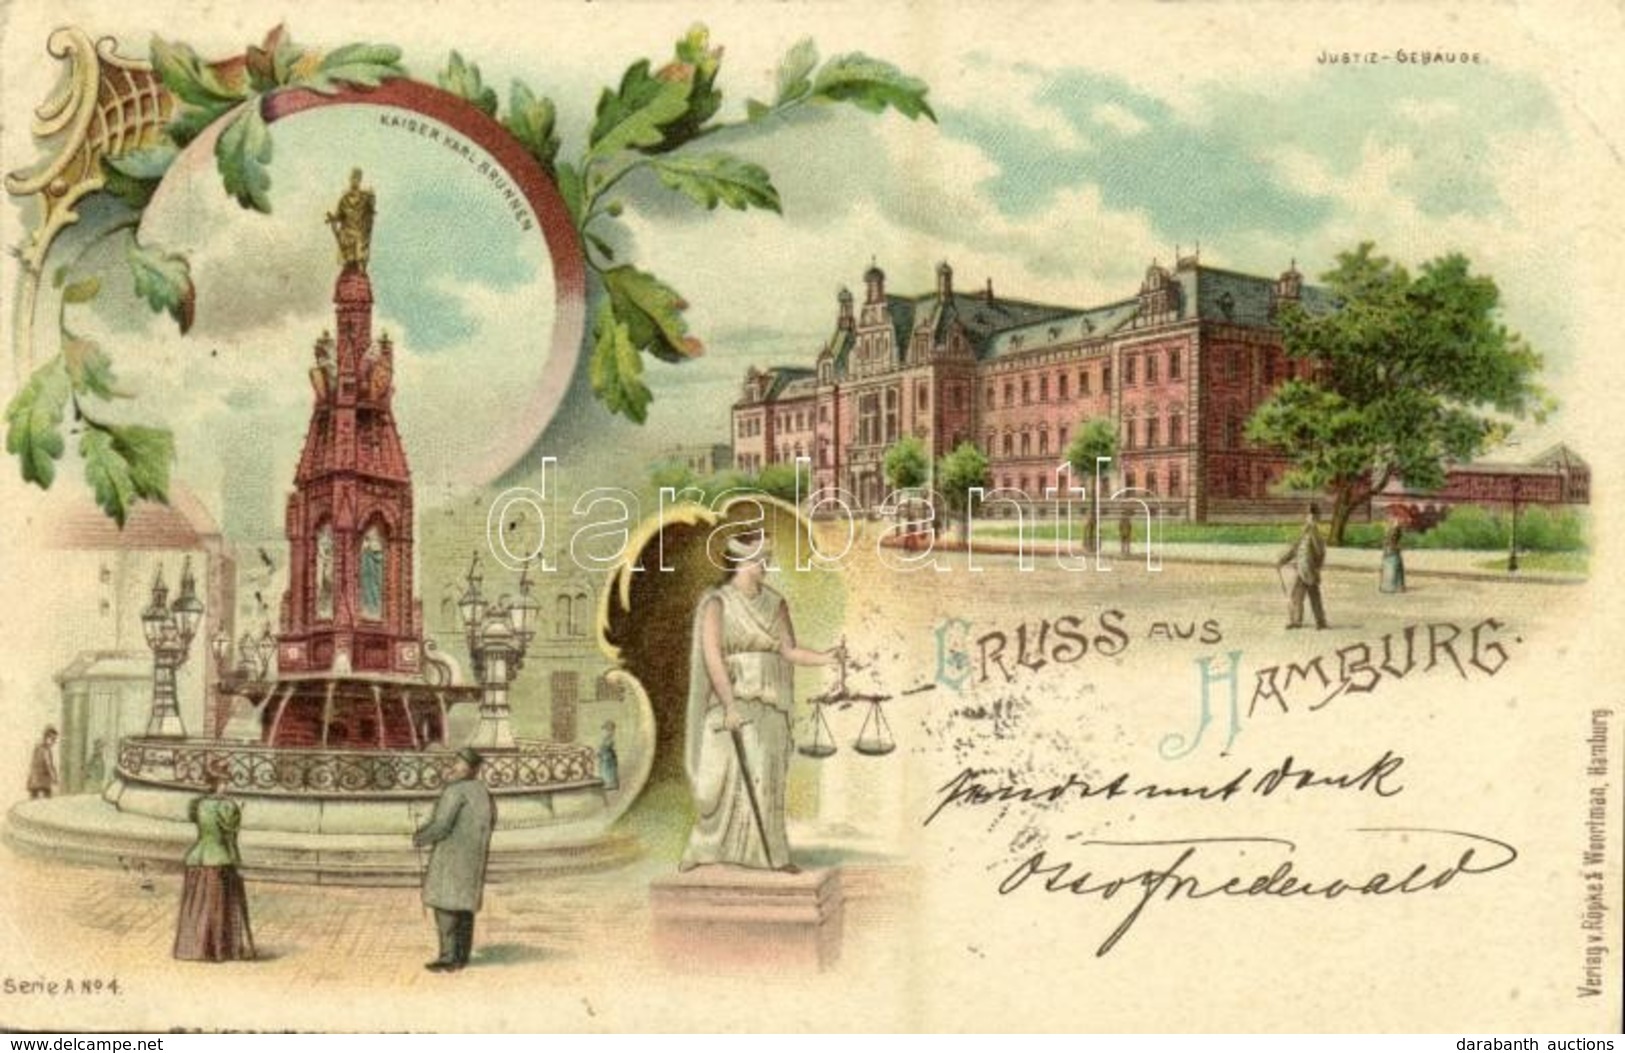 T2/T3 1898 Hamburg, Justiz-Gebäude, Kaiser Karl Brunnen / Justice Palace, Fountain. Verlag V. Röpke & Woortman Serie A N - Unclassified